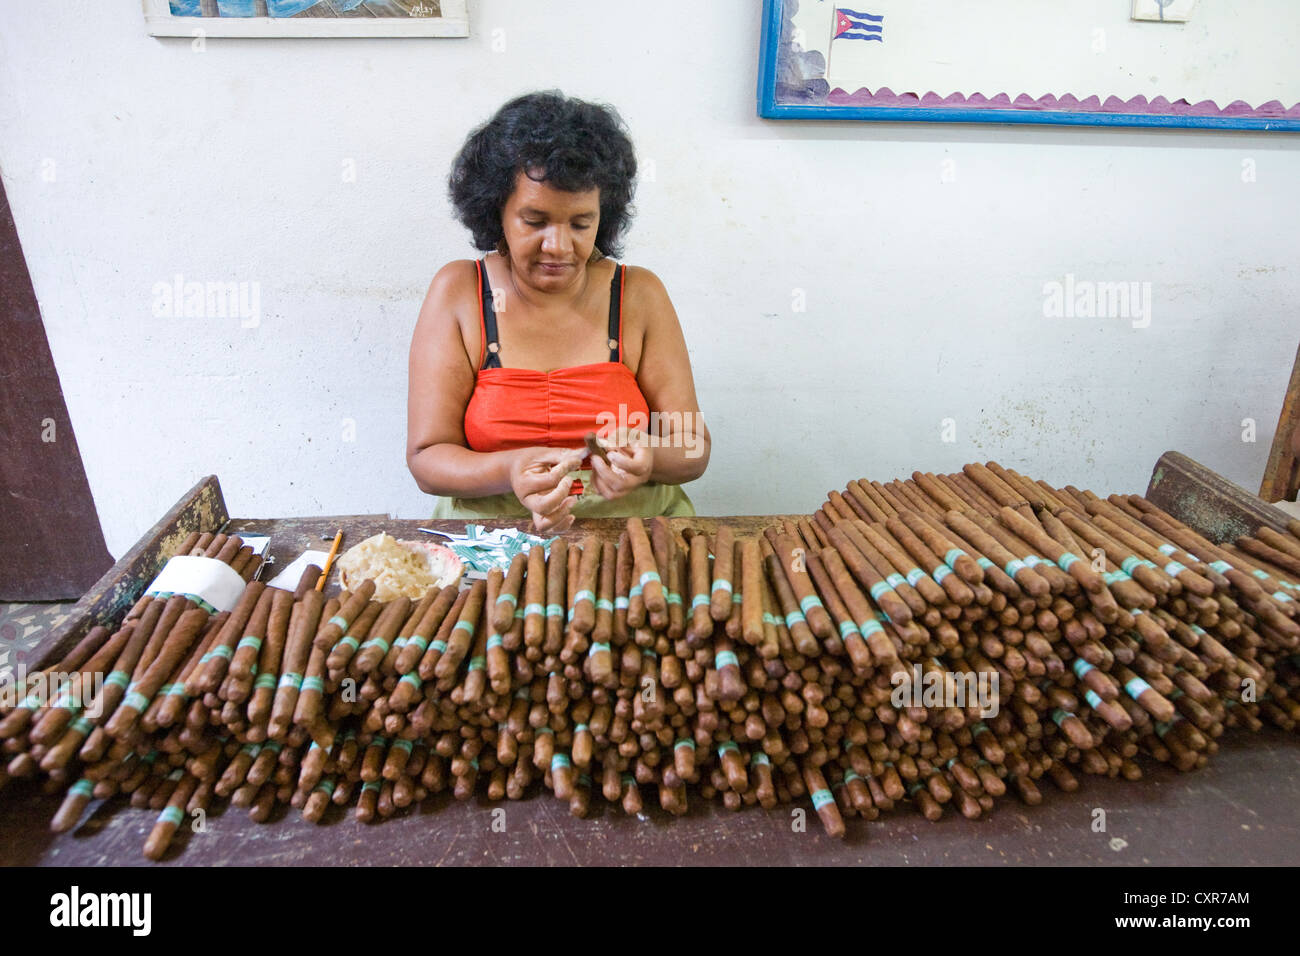 Uno dei più di cento lavoratori nella fabrica de Tabaco Carlos Rodriguez Cariaga fabbrica di sigari, mettendo le etichette sui sigari Foto Stock